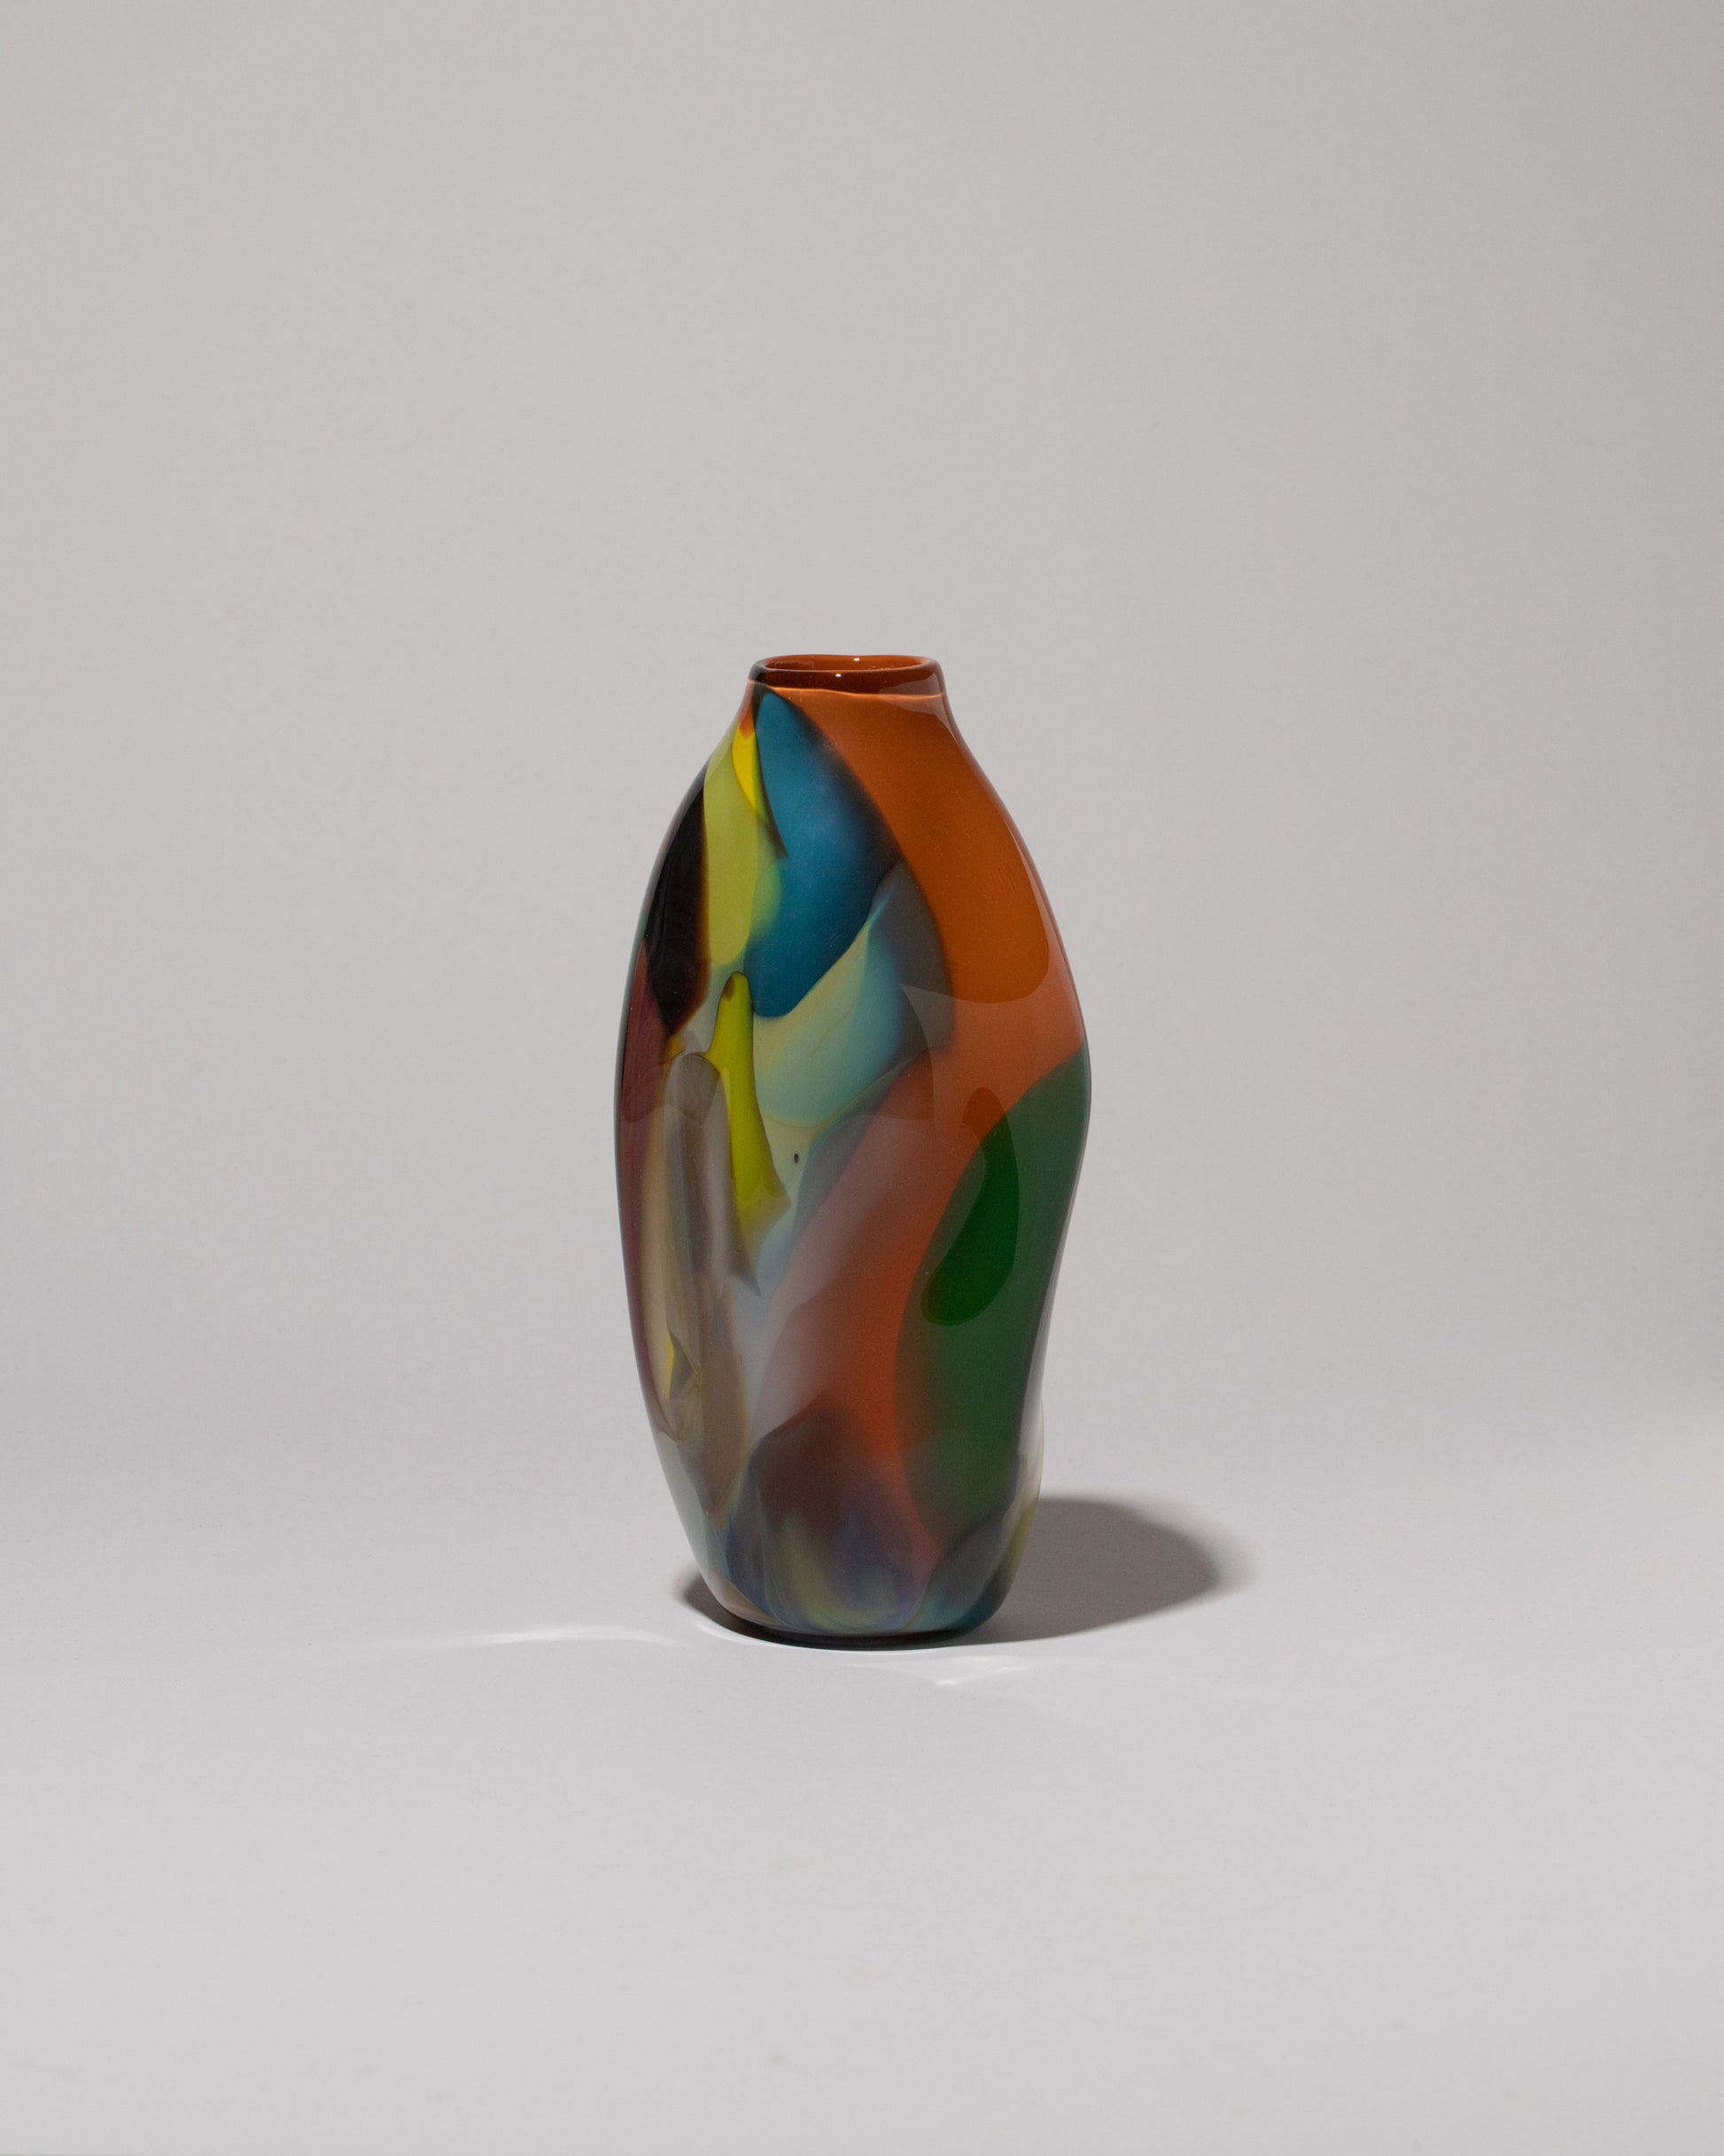 BaleFire Glass Small Orange Epiphany Vase on light color background.